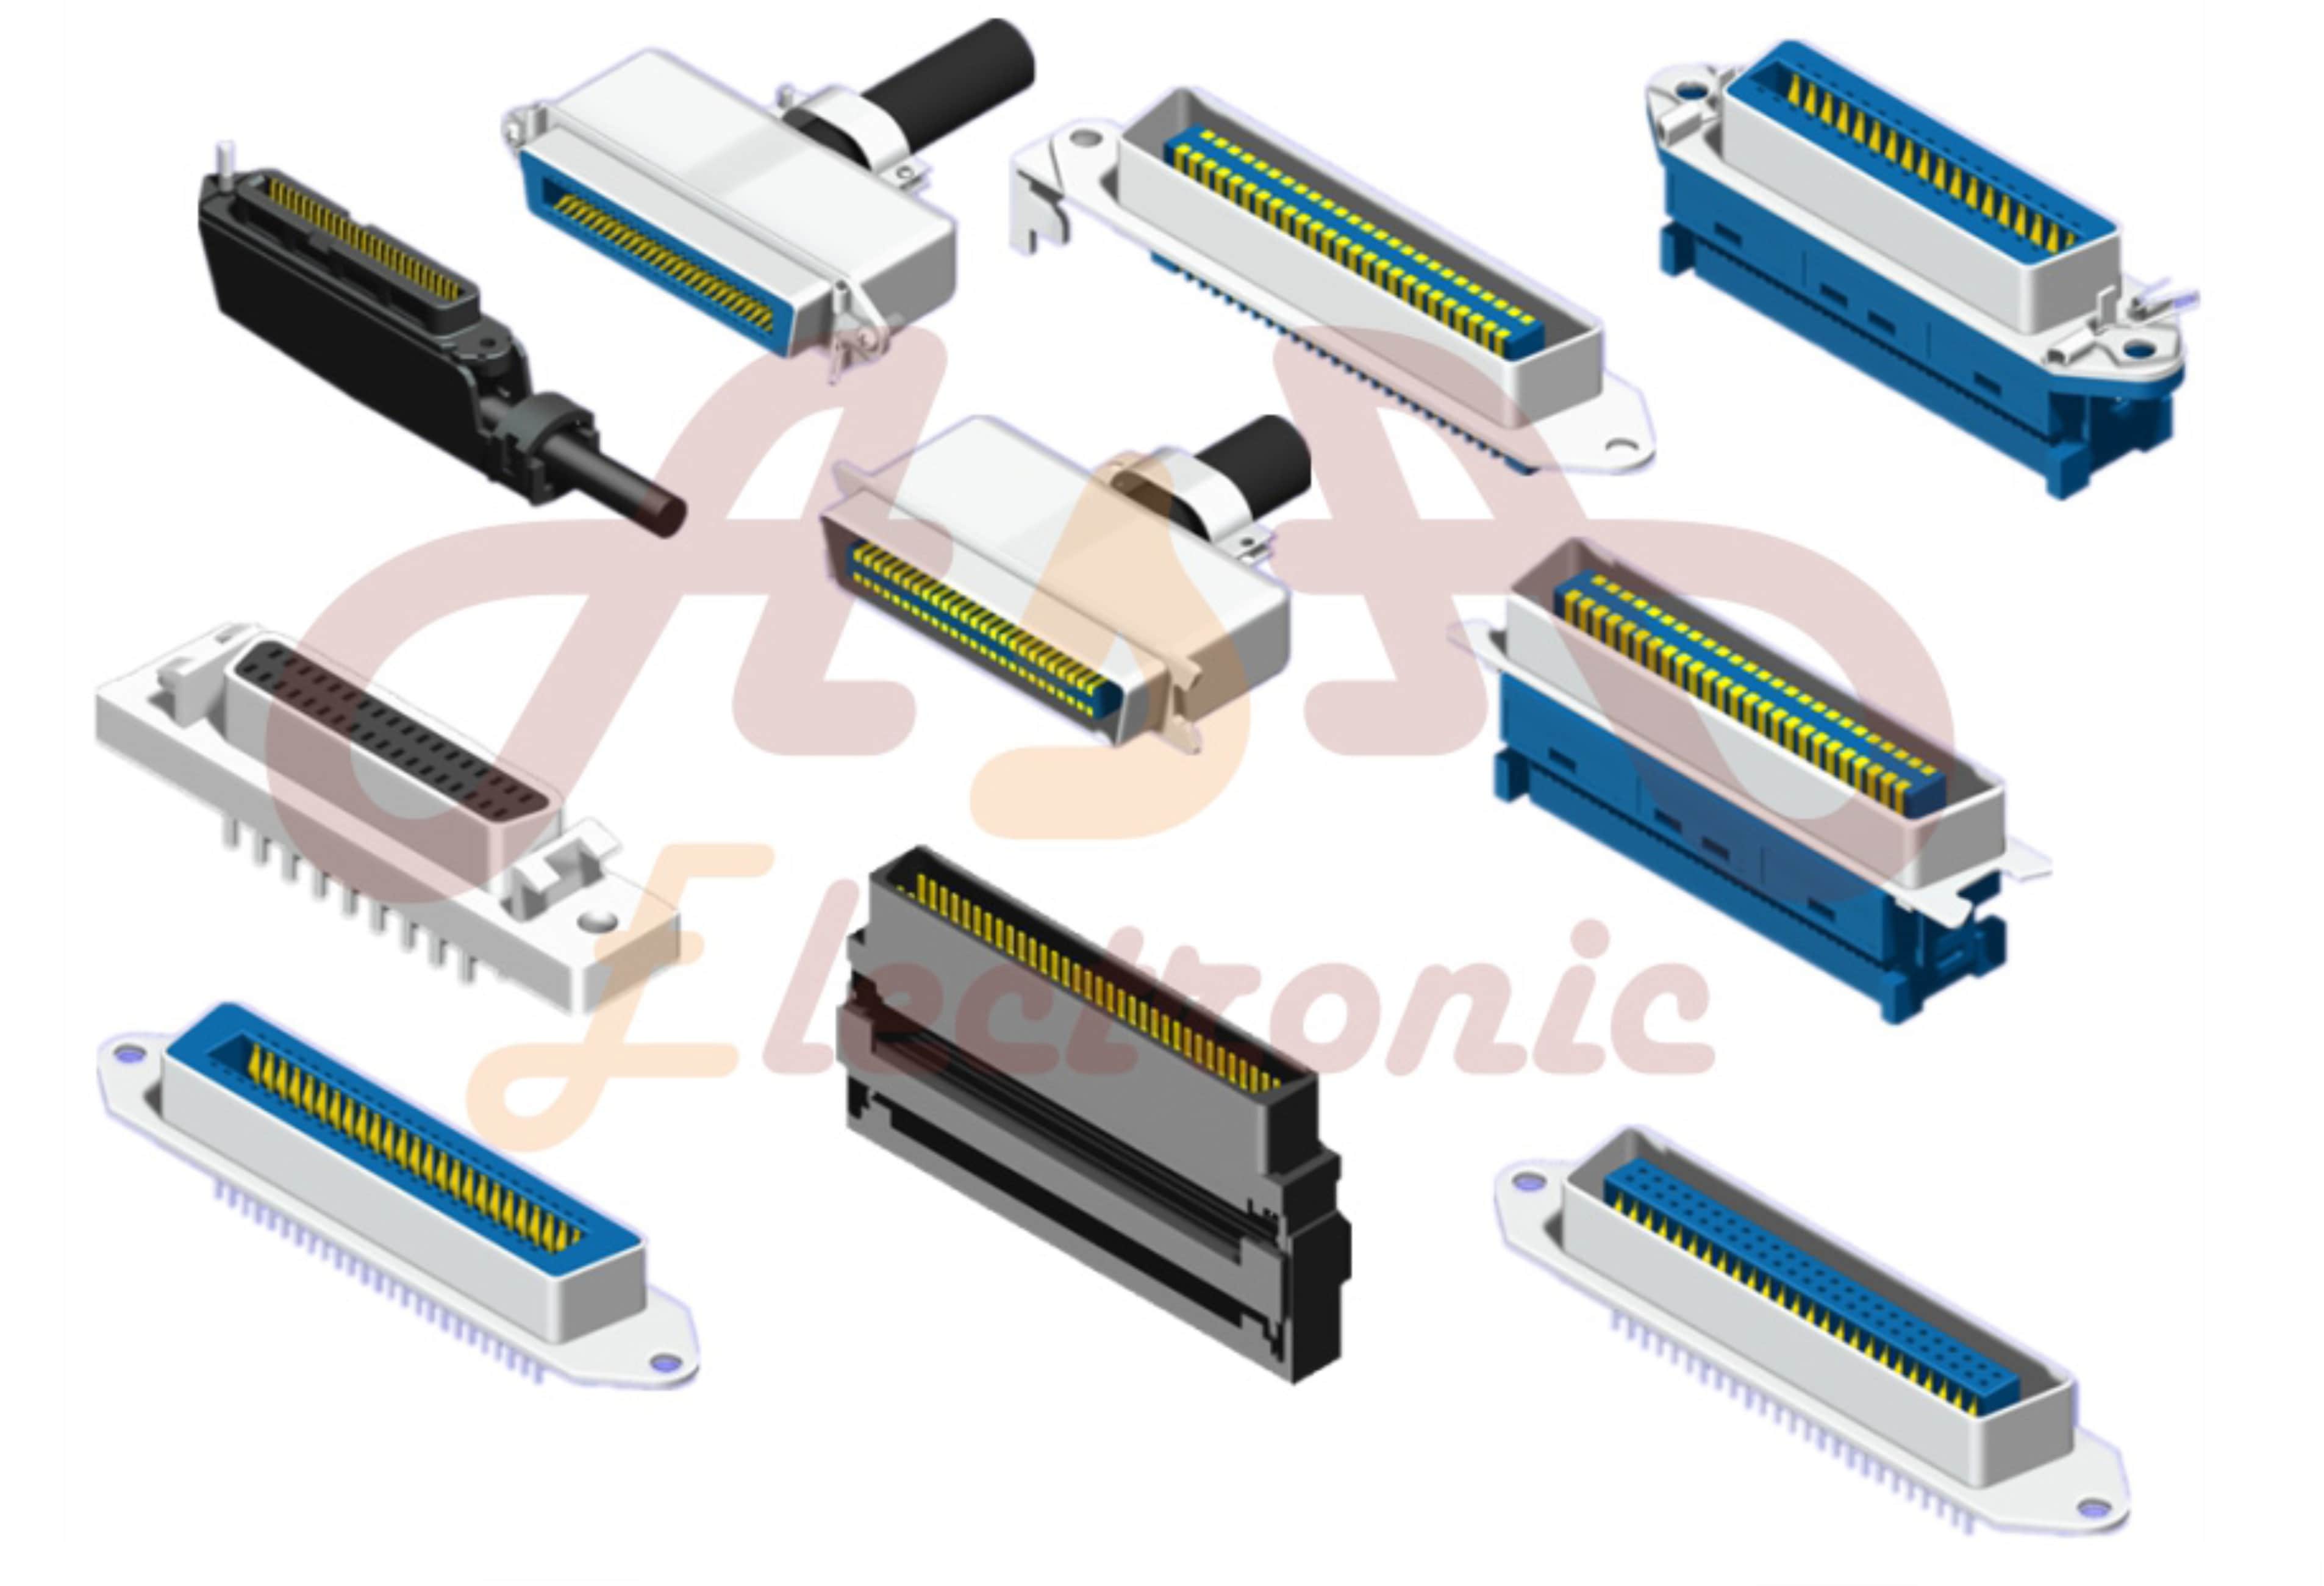  Centronic & SCSI connectors